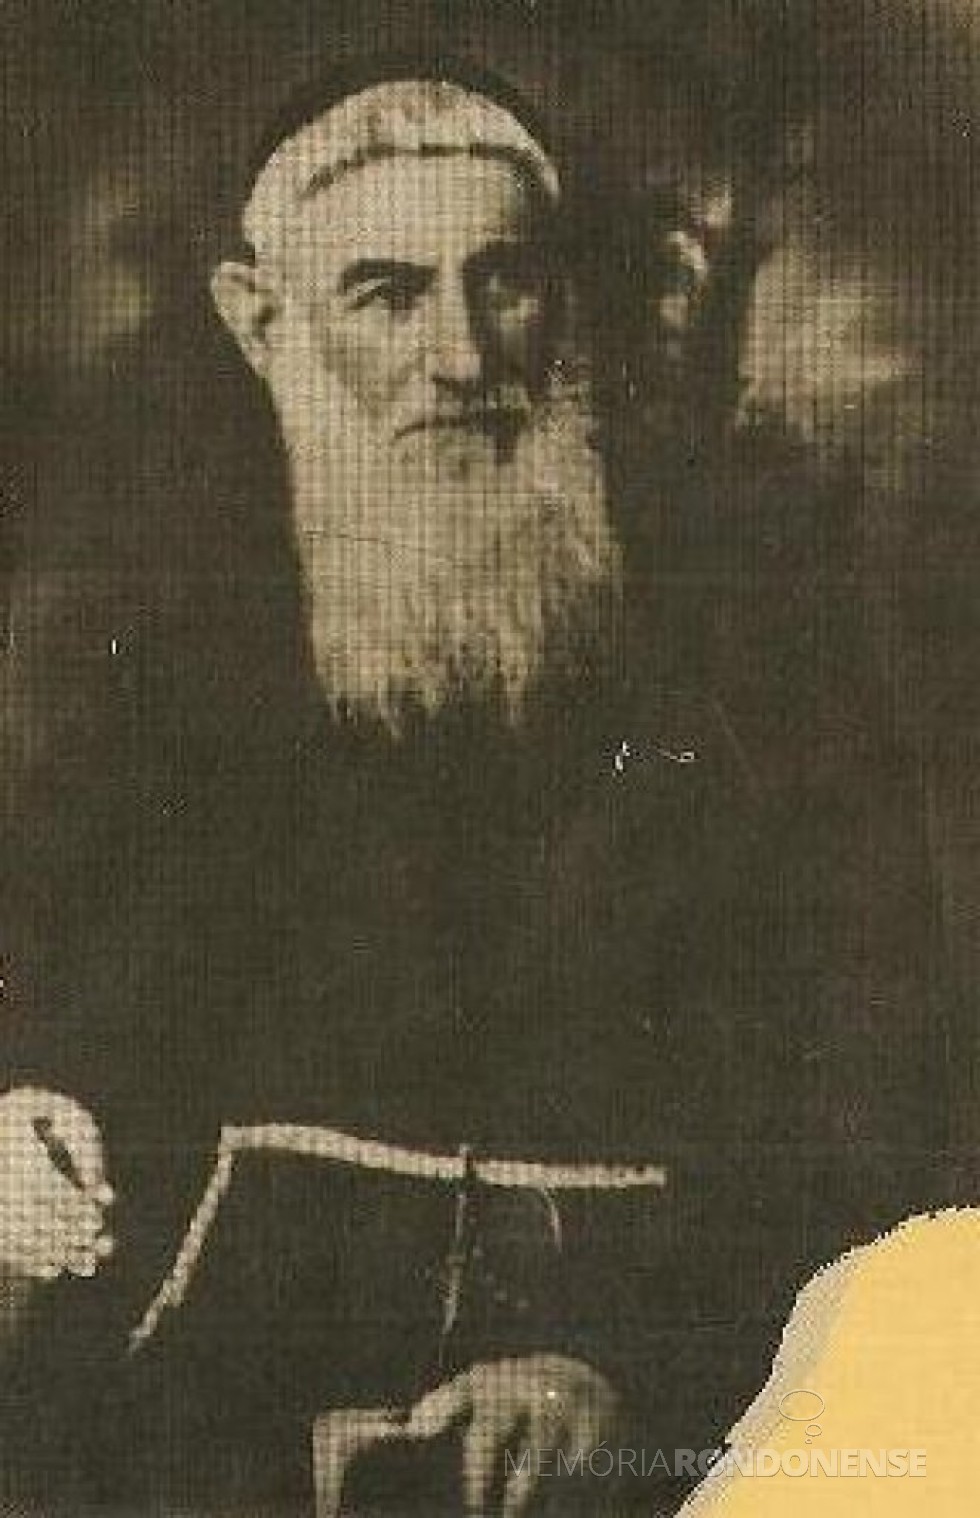 || Frei Timóteo de Castelnuovo, introdutor do café no Paraná,  falecido em maio de 1895.
Imagem: Acervo Diocese de Ourinhos (SP) - FOTO 2 -